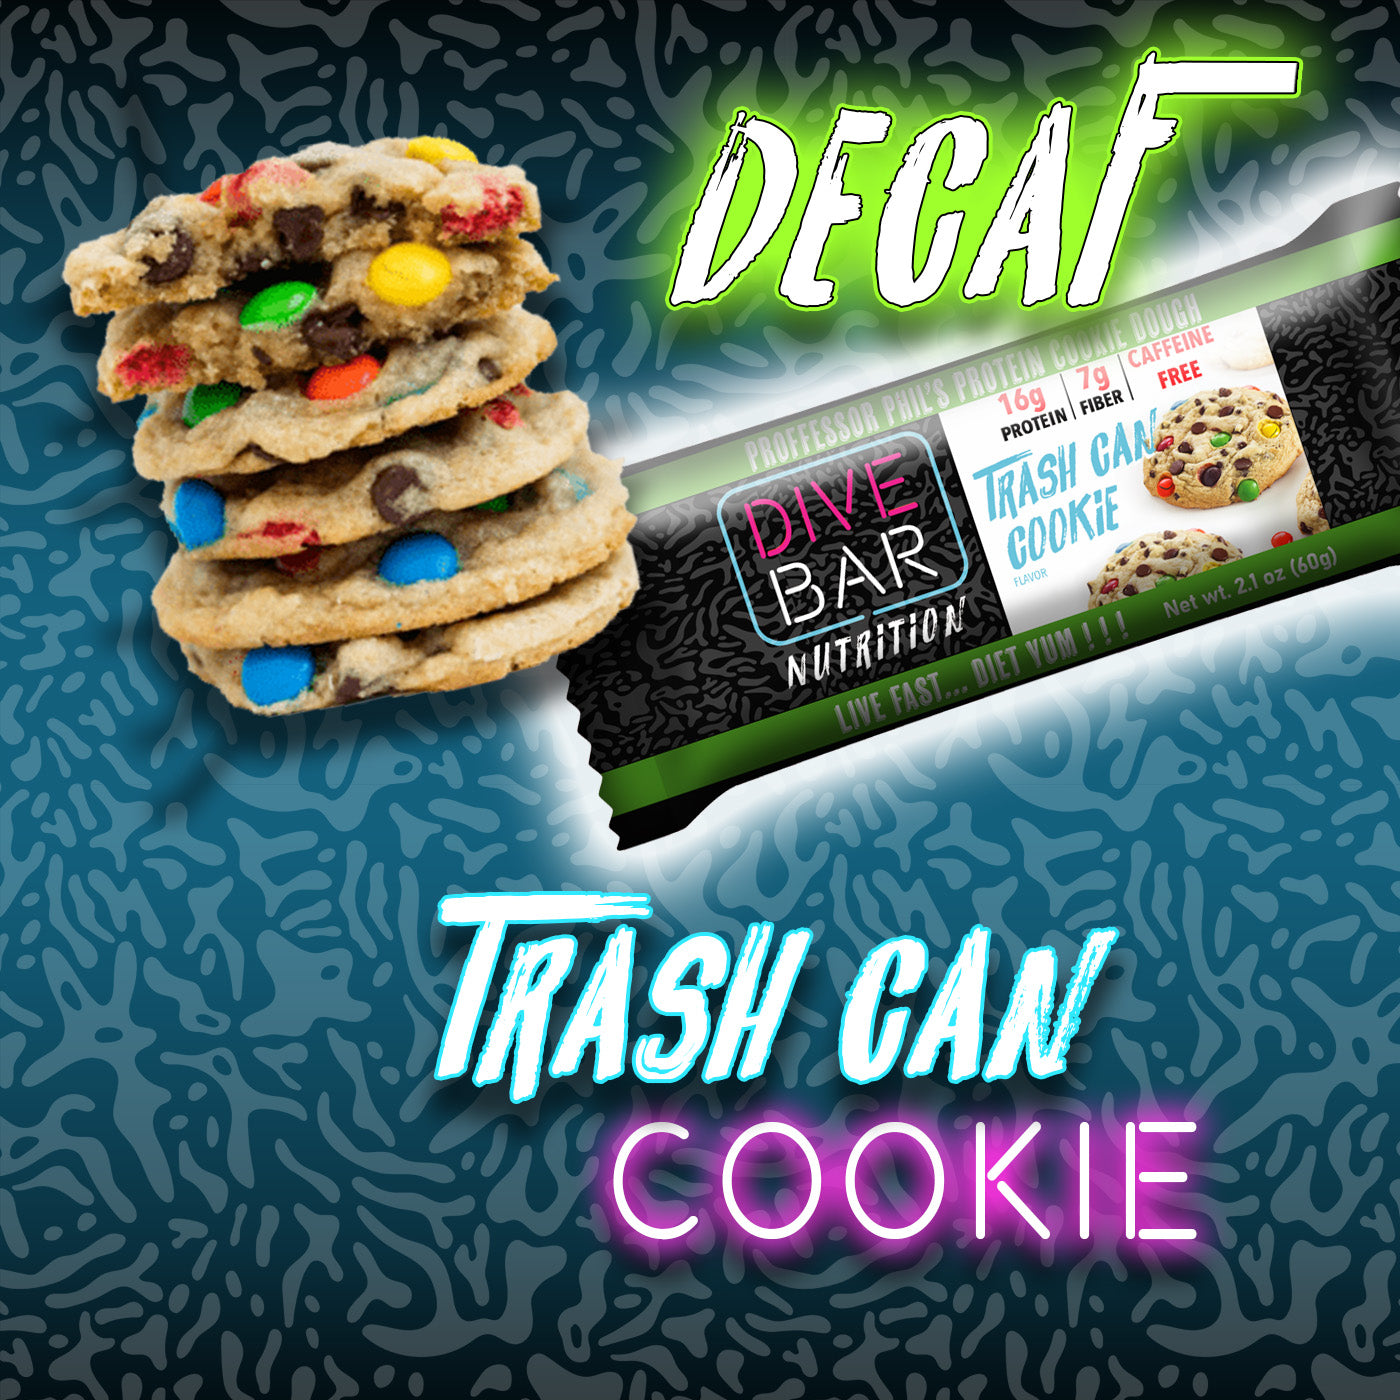 CAFFEINE FREE Trash Can Cookie, dozen